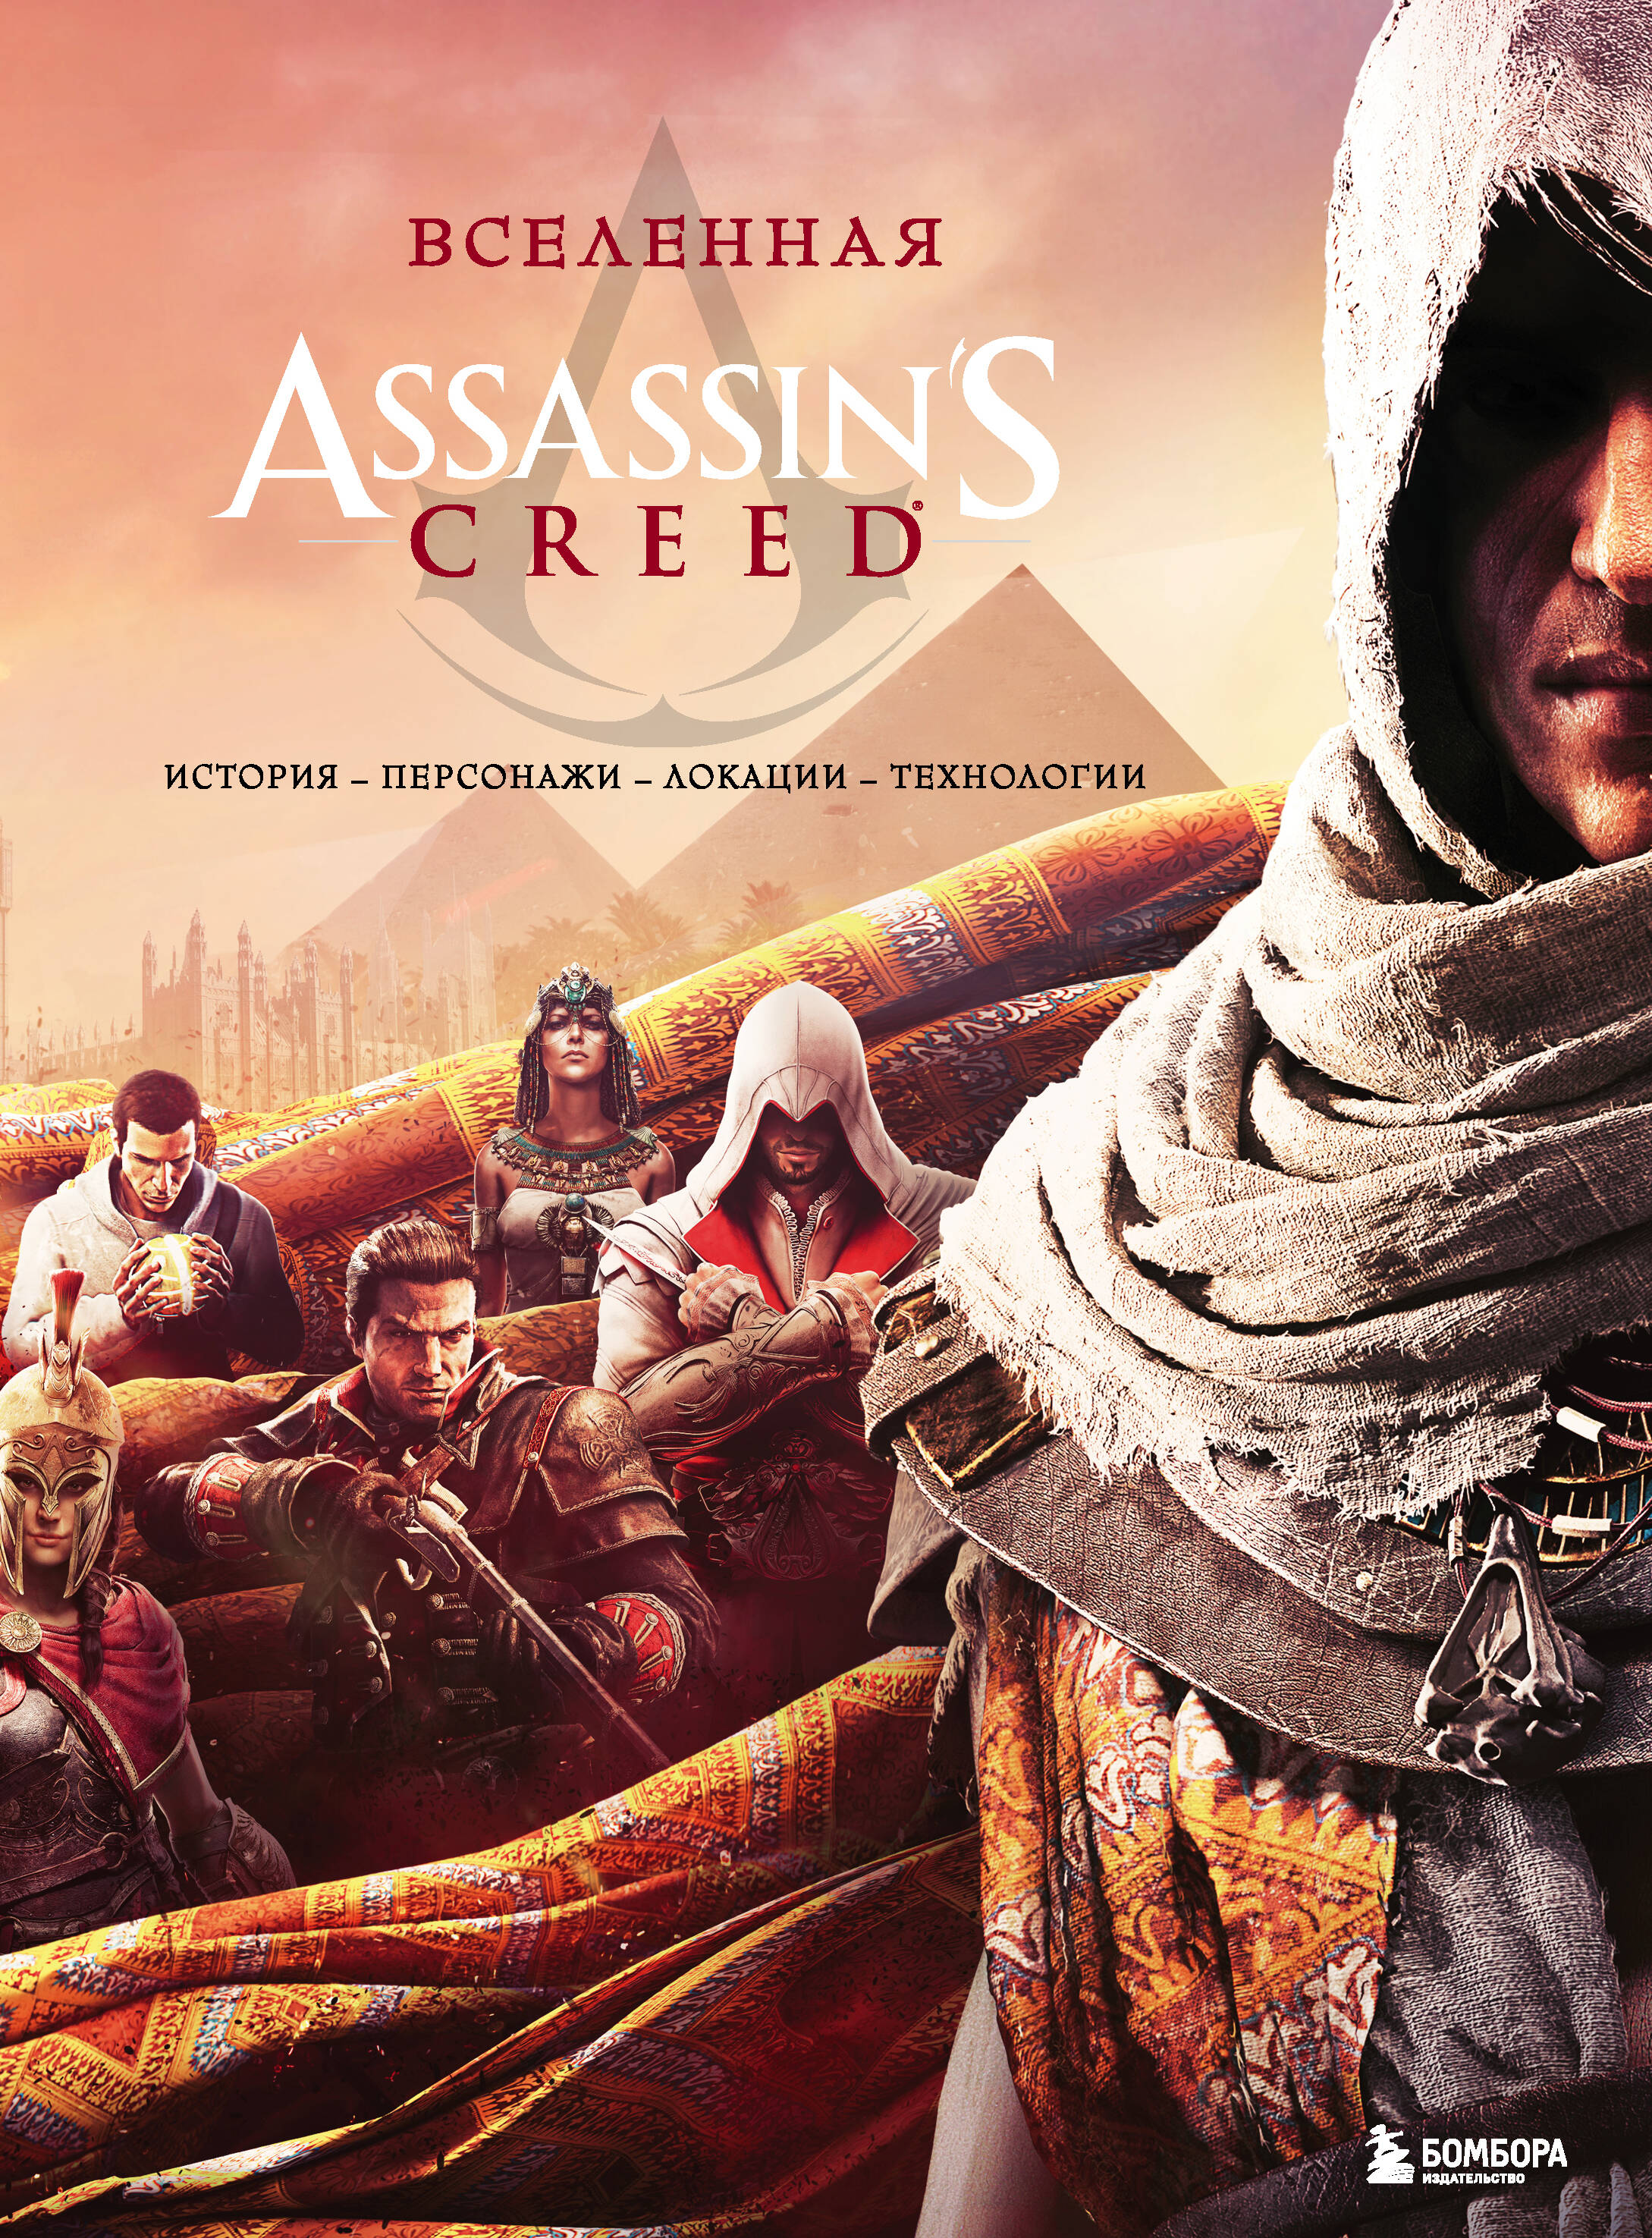 Вселенная Assassins Creed: история, персонажи, локации, технологии assassins creed истоки